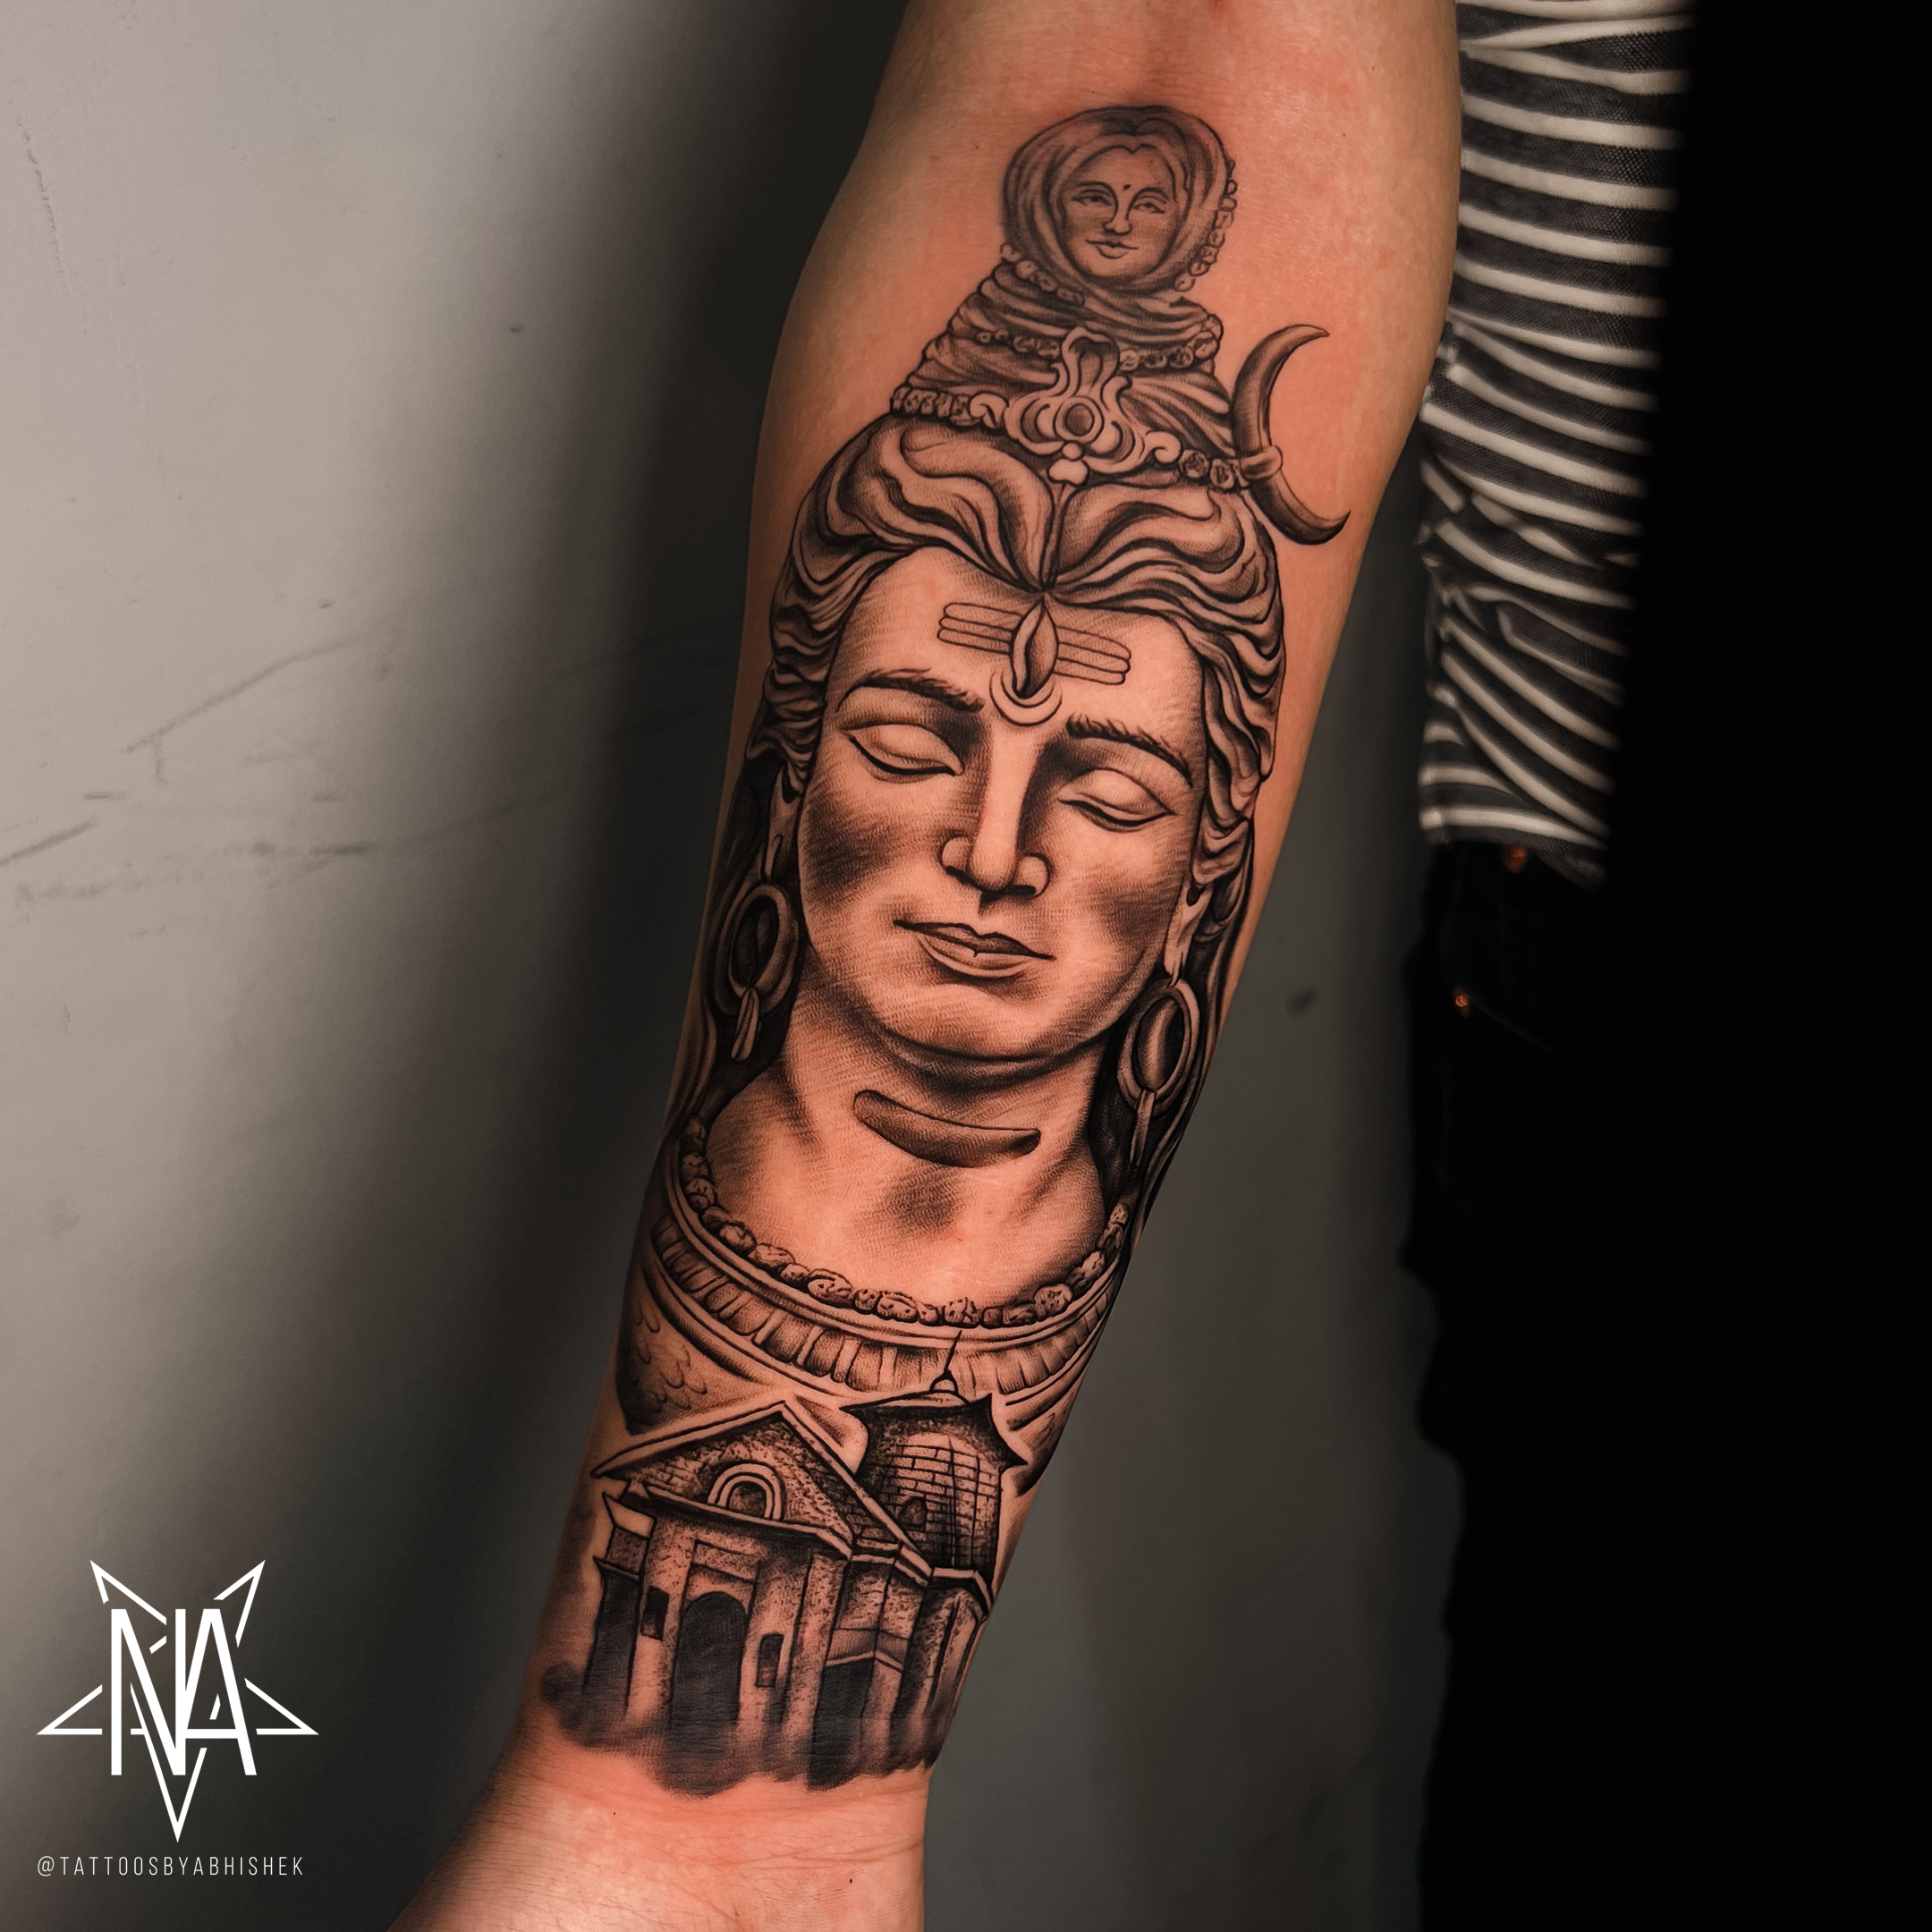 Tattoo ideas - Lord Shiva symbol tat | Facebook